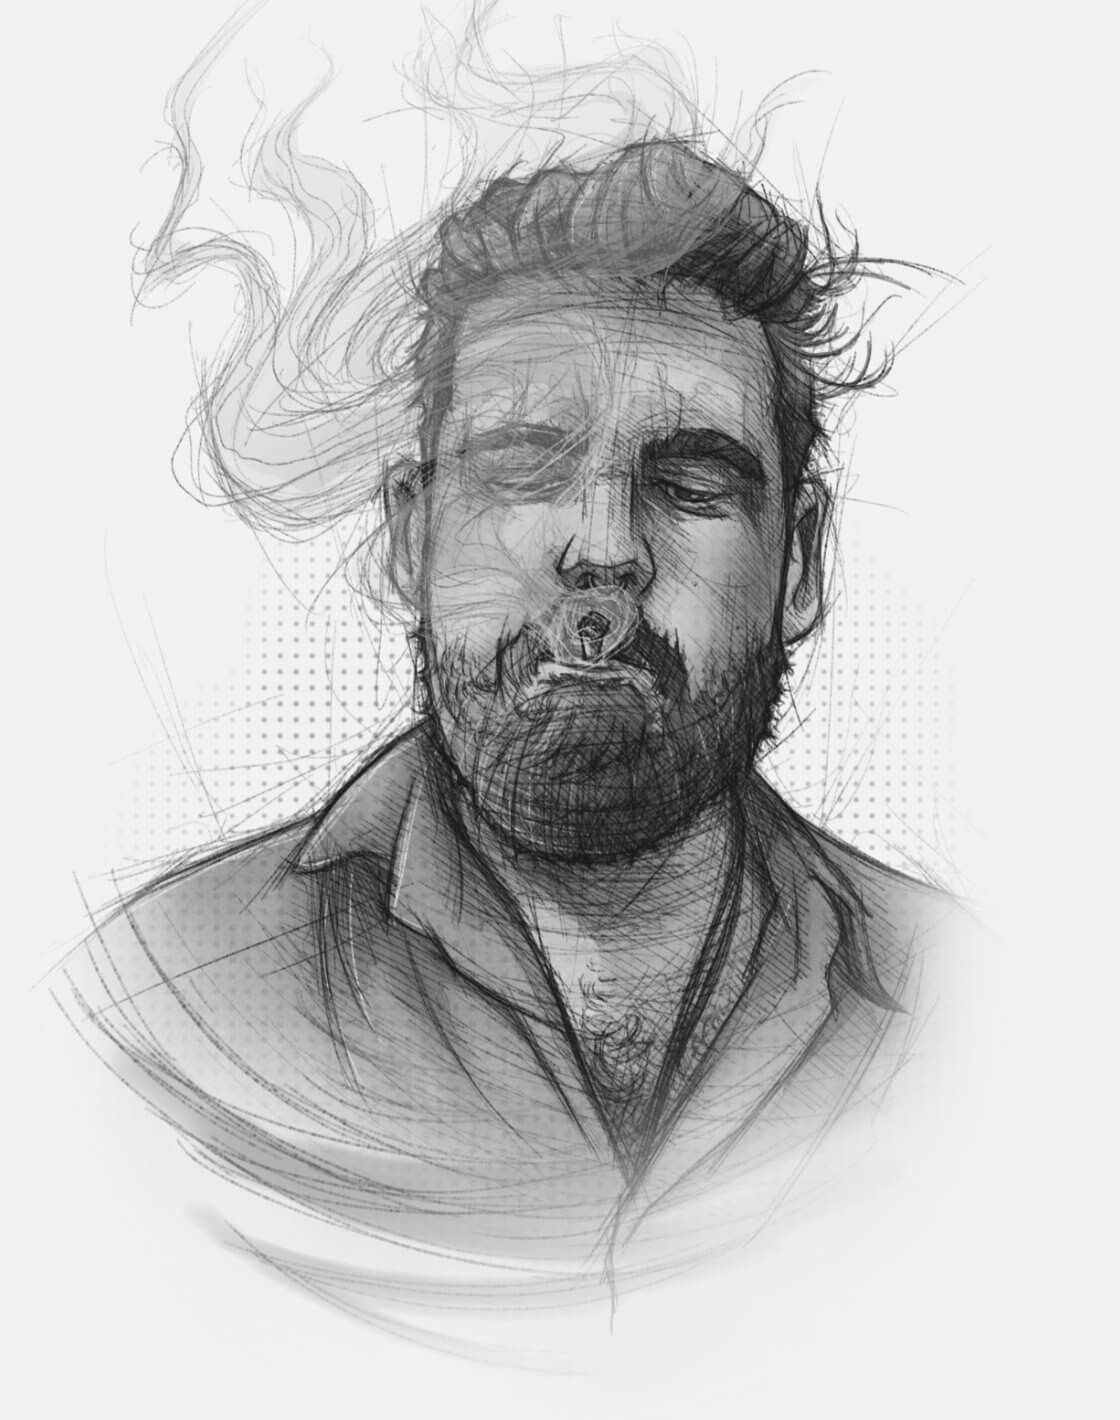 Eine skizzenhafte Portrait-Illustration, die einen rauchenden Mann mit Bart zeigt